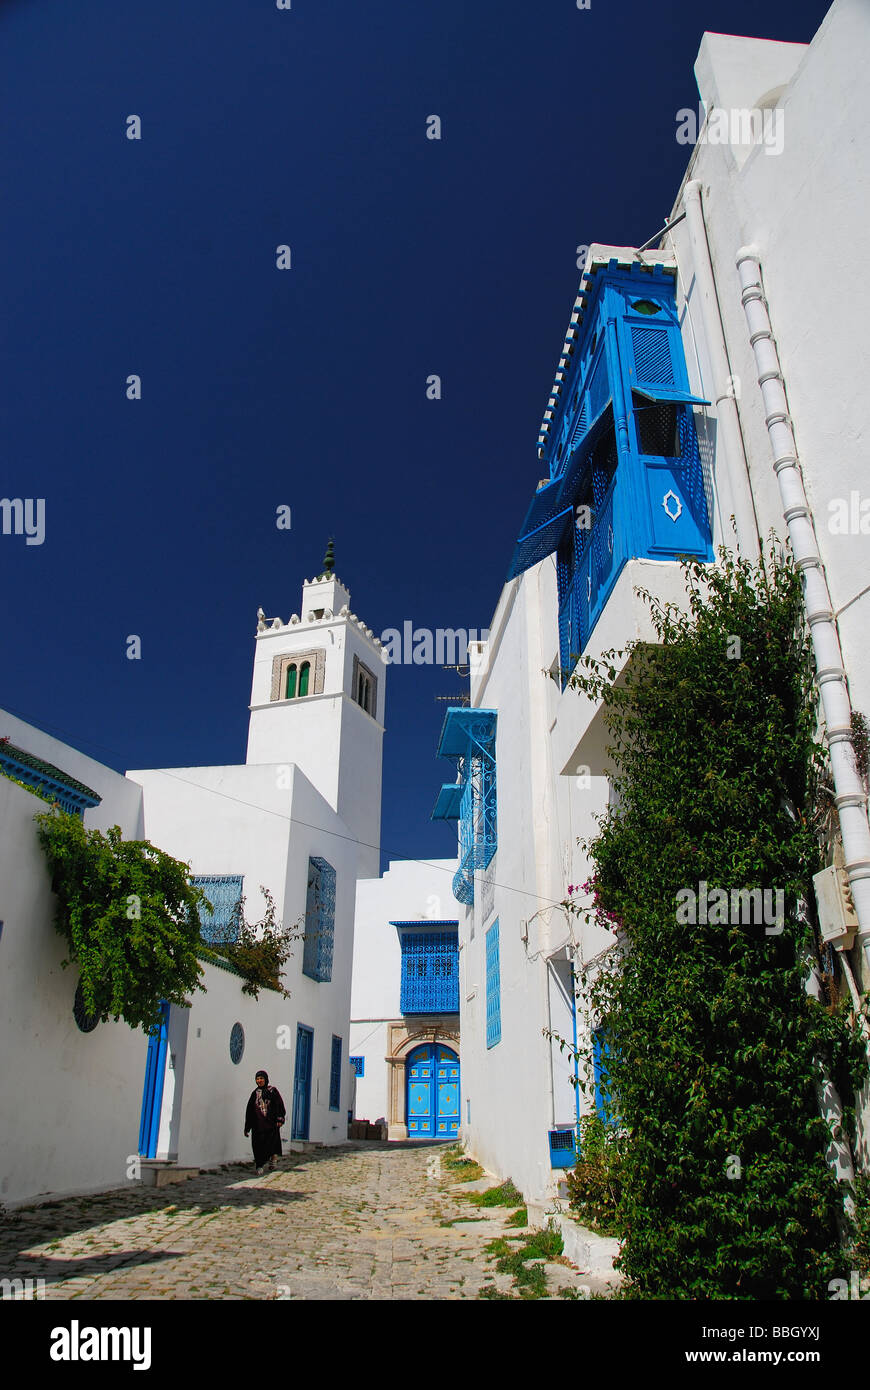 TUNIS, TUNISIE. Bâtiments blanchis à la chaux, etc, dans le village de Sidi Bou Said à l'extérieur de Tunis. L'année 2009. Banque D'Images